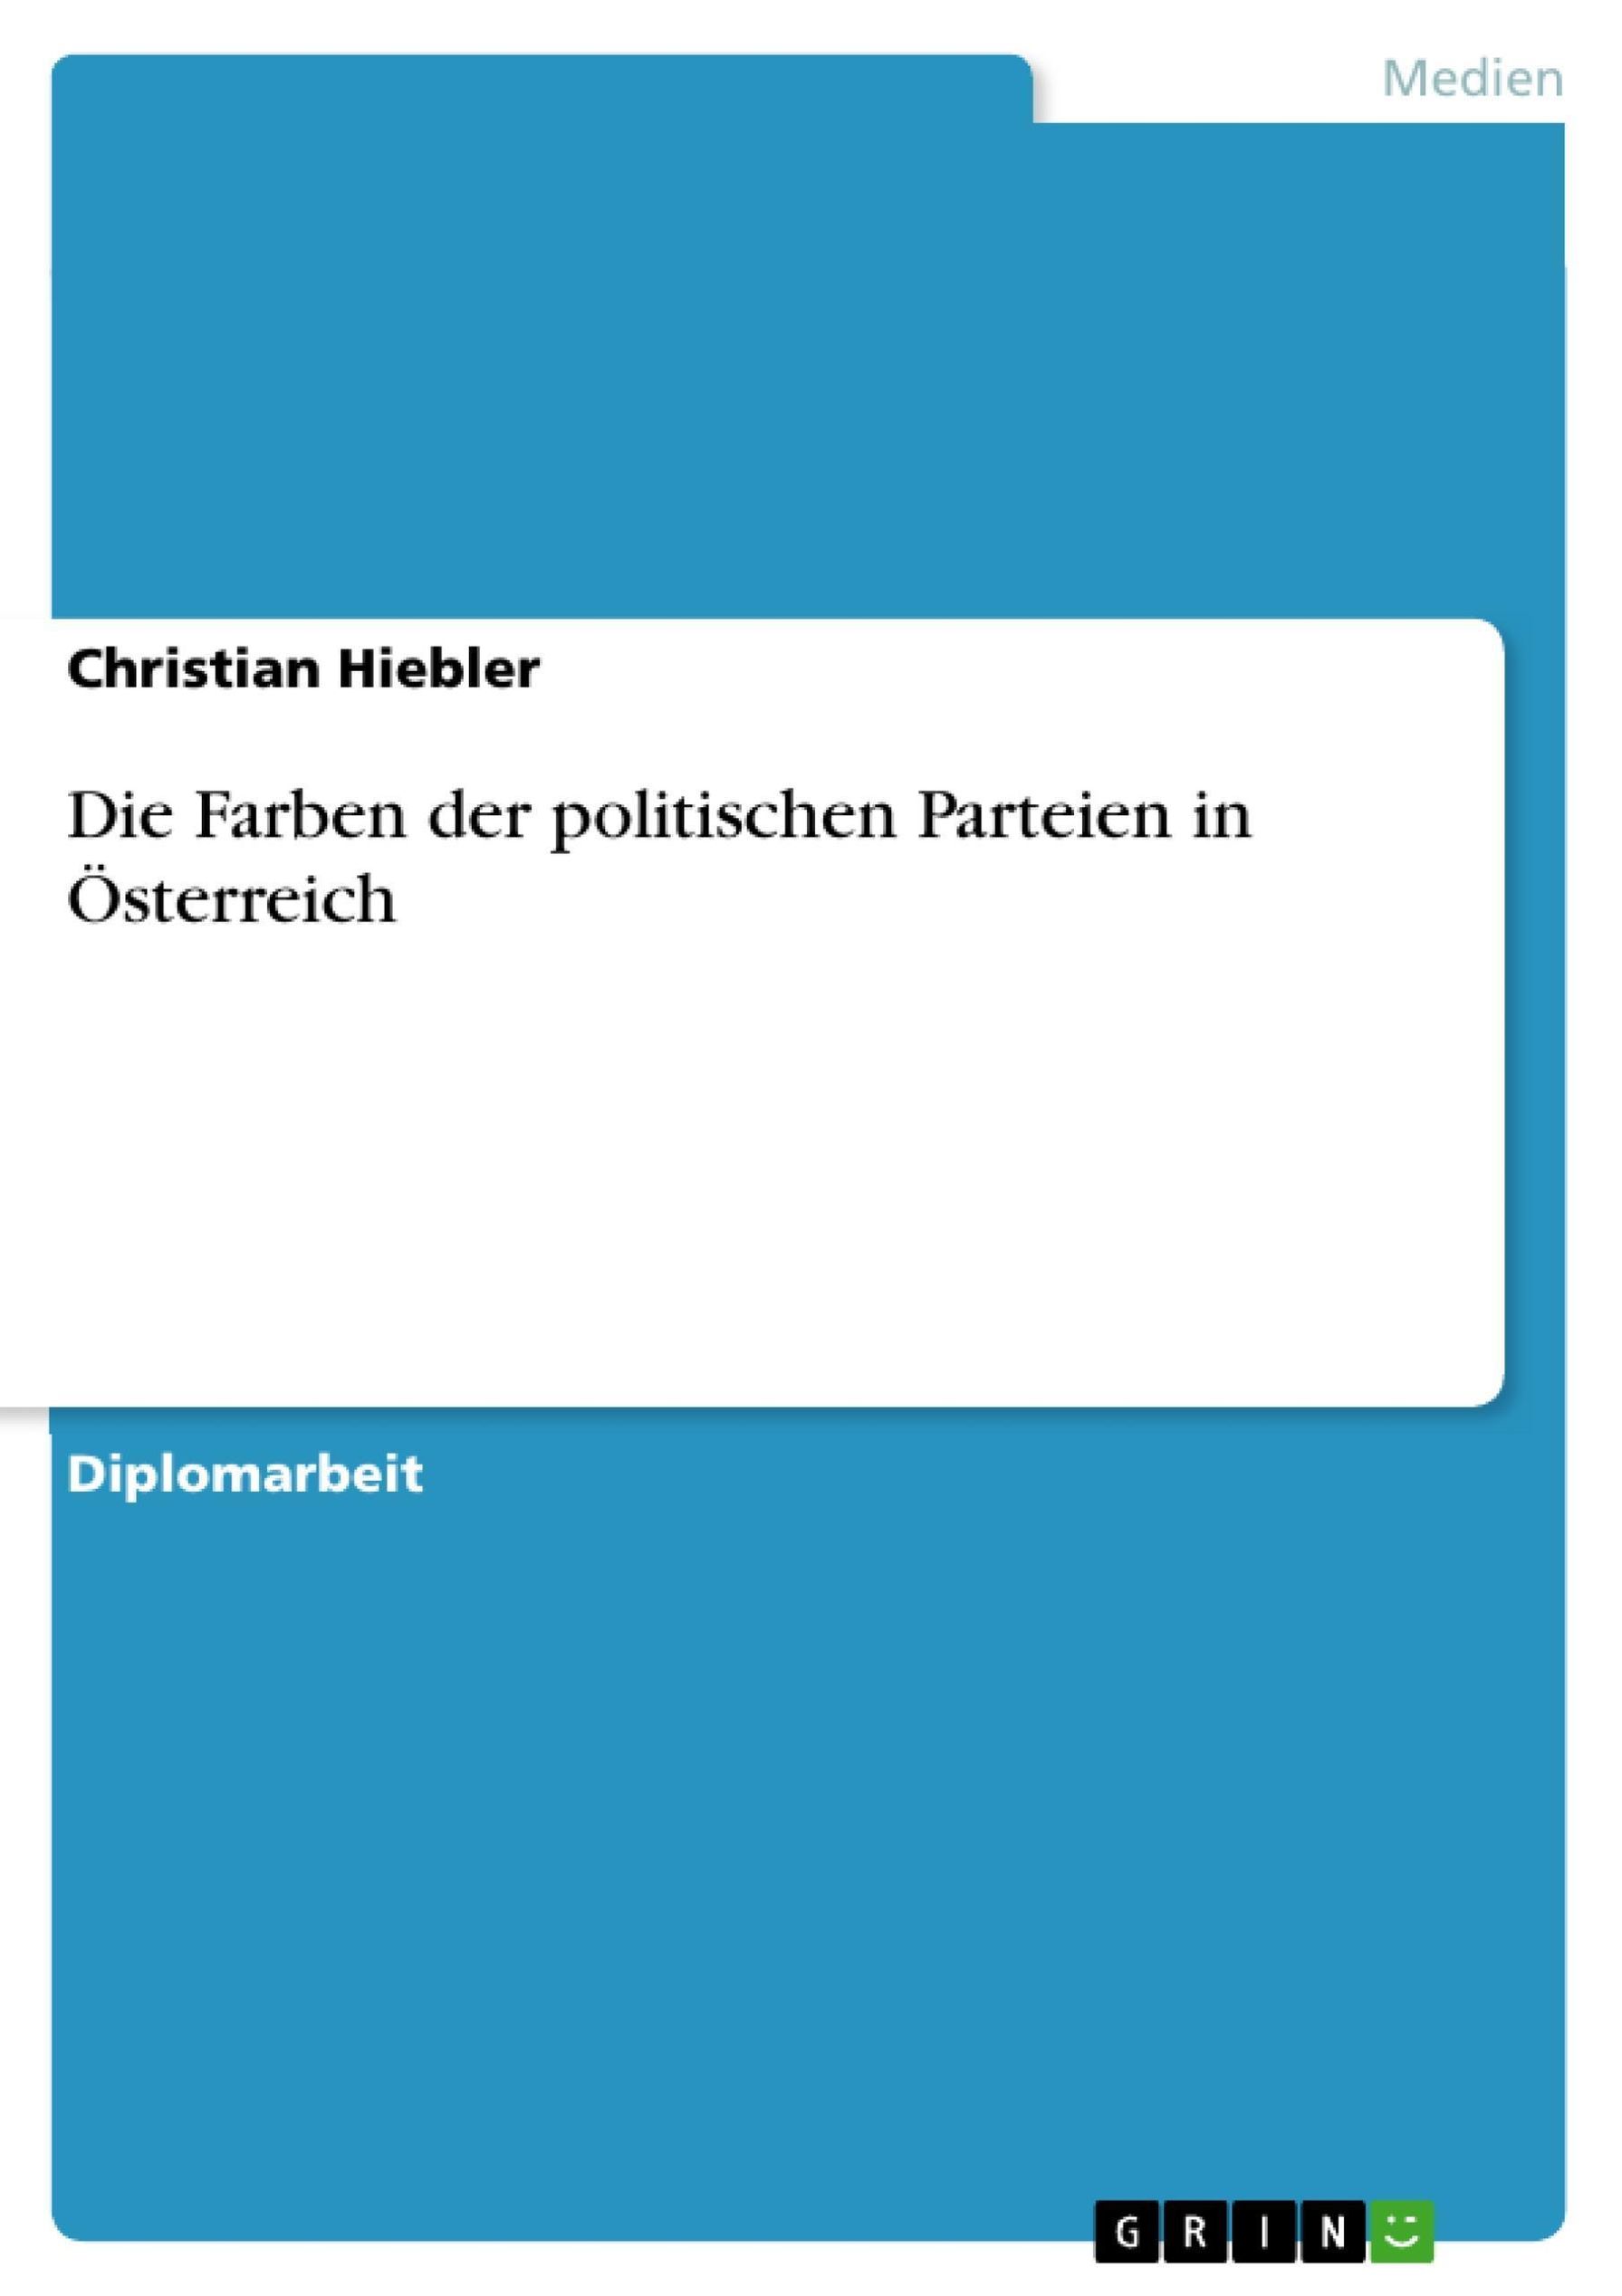 Die Farben der politischen Parteien in Österreich eBook v. Christian  Hiebler | Weltbild